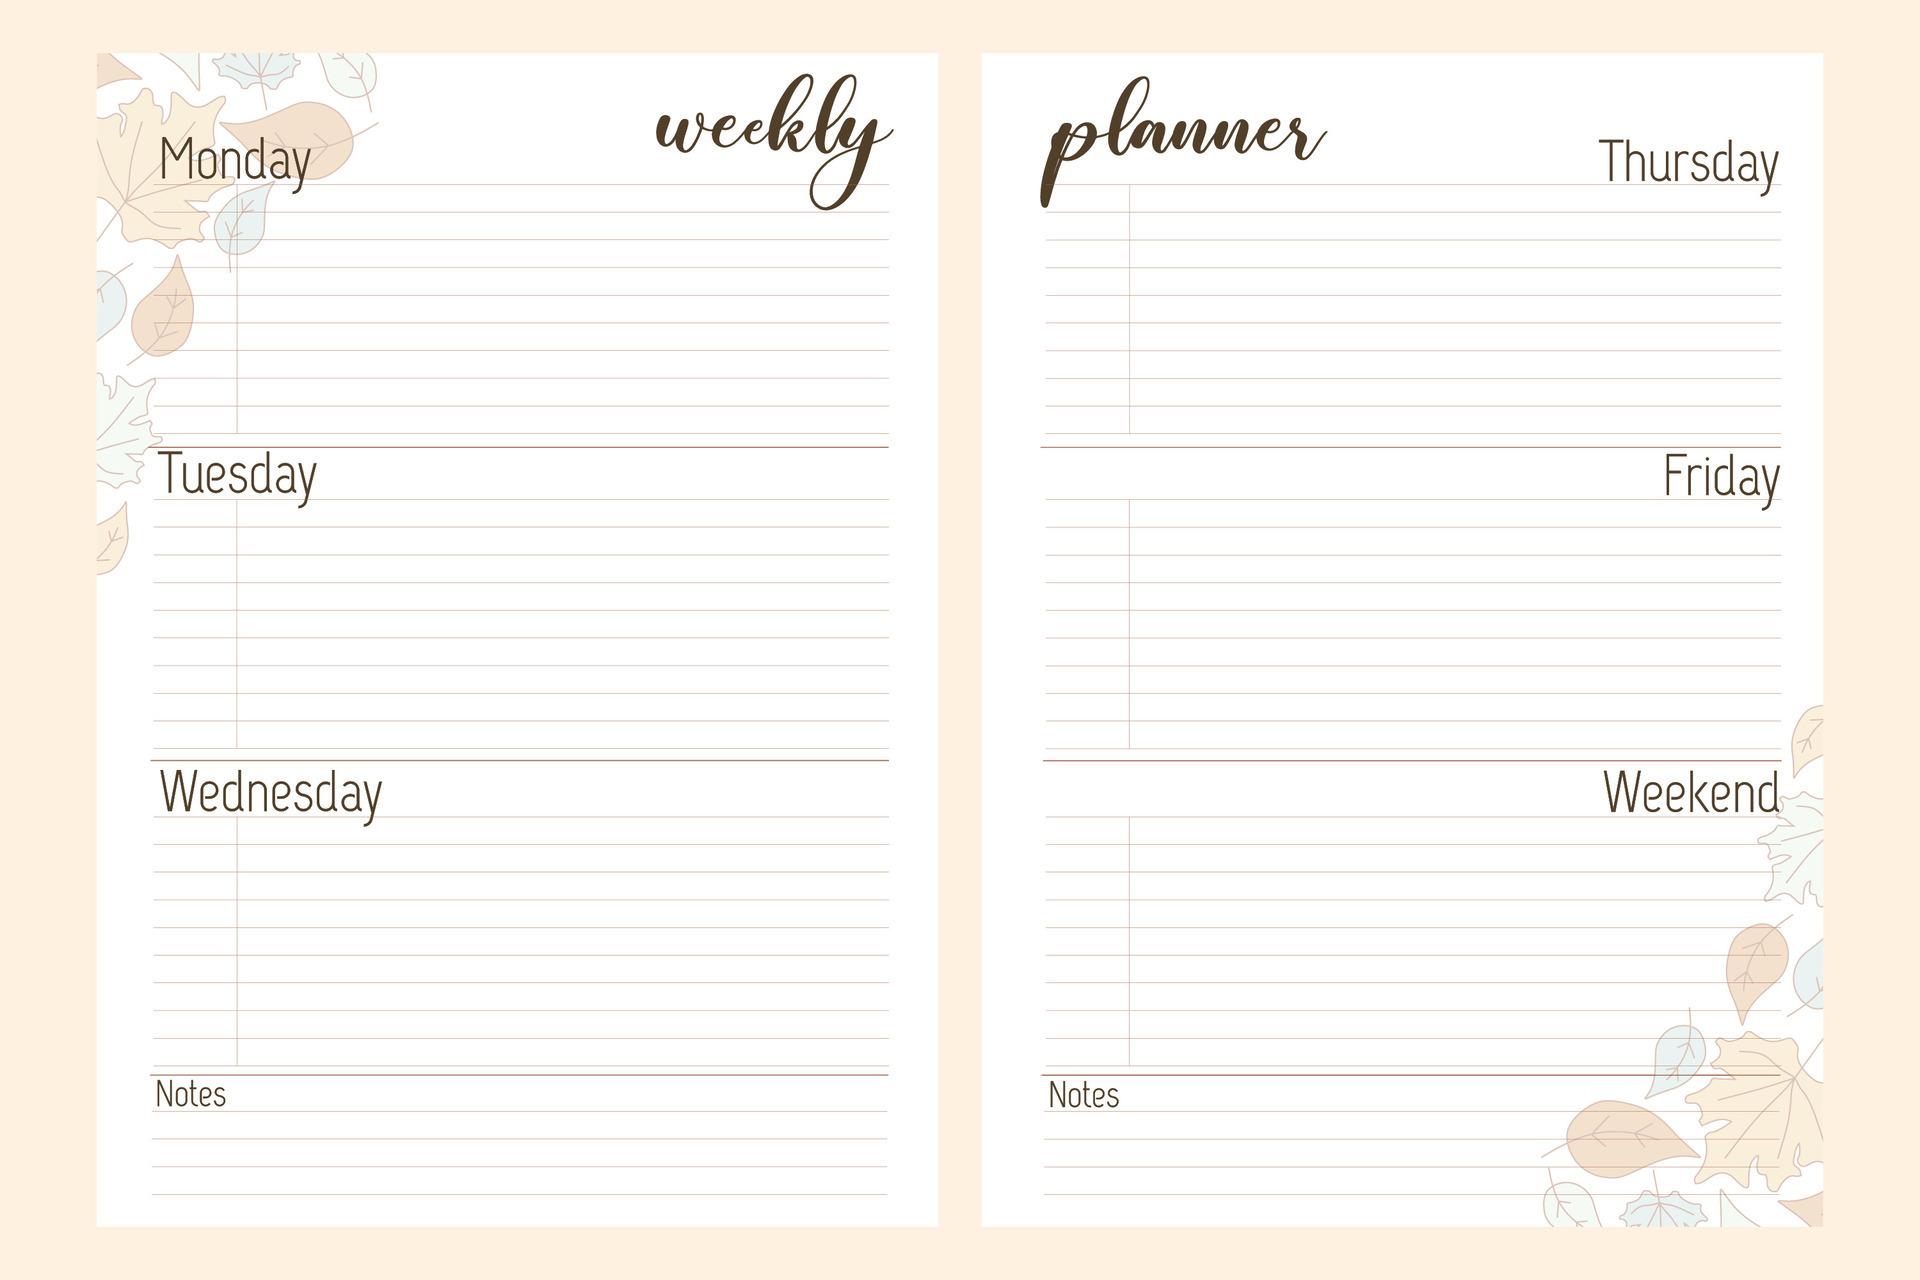 Weekly planner printable template